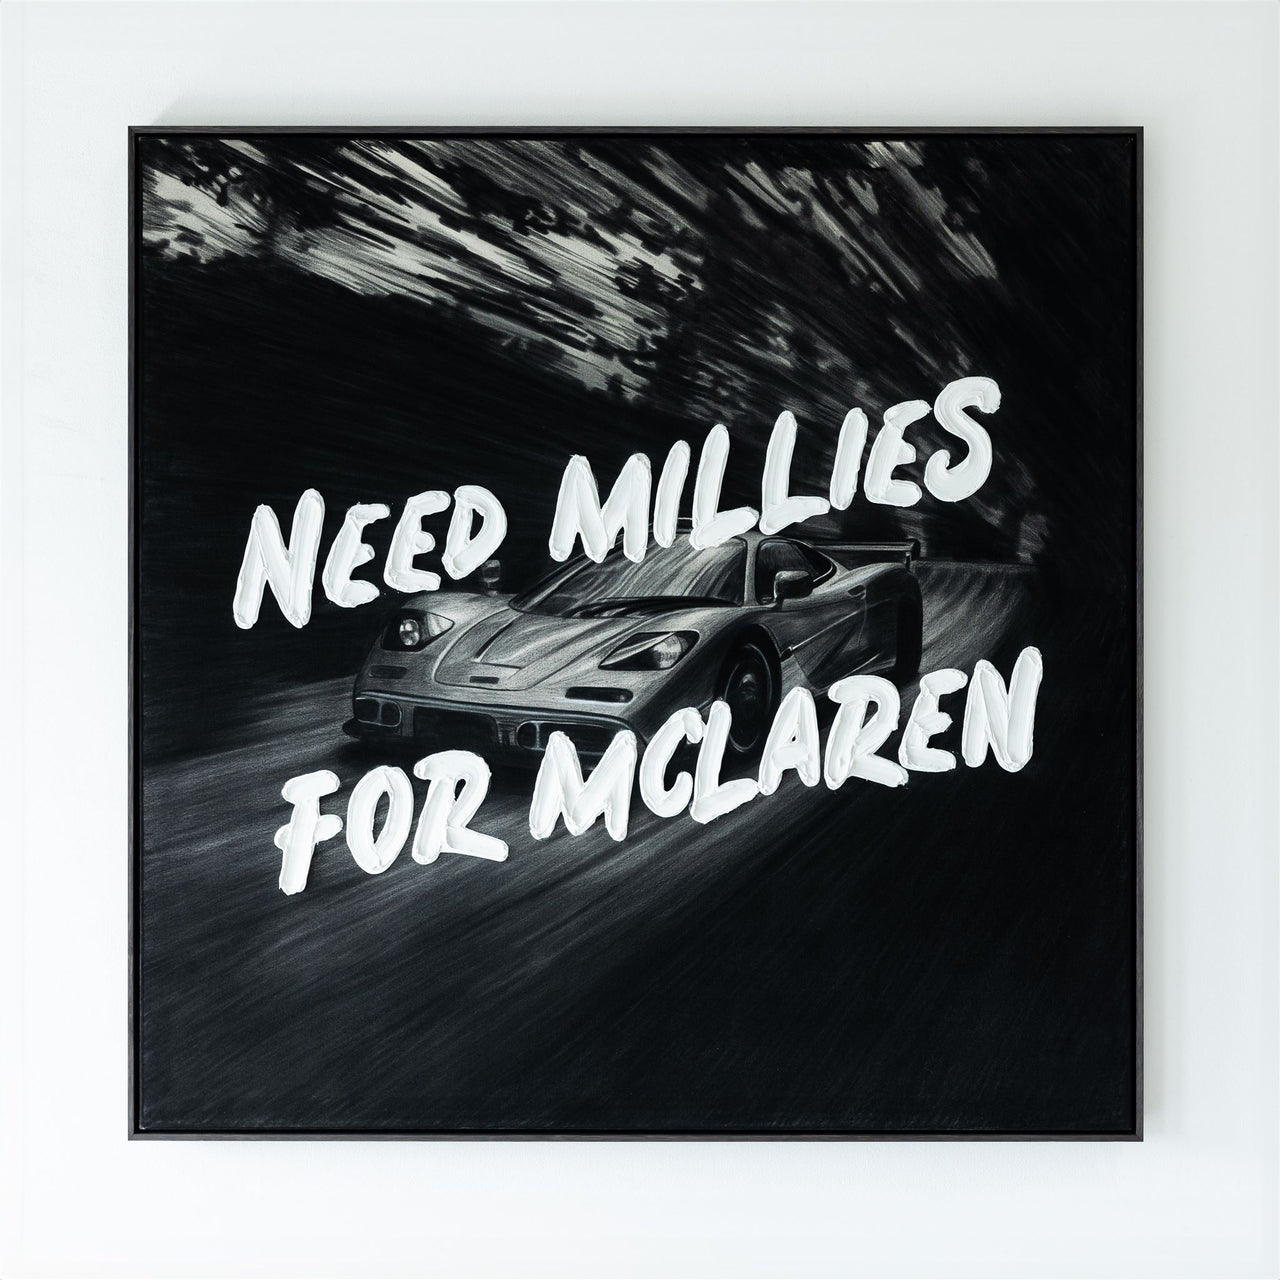 NEED MILLIES FOR MCLAREN